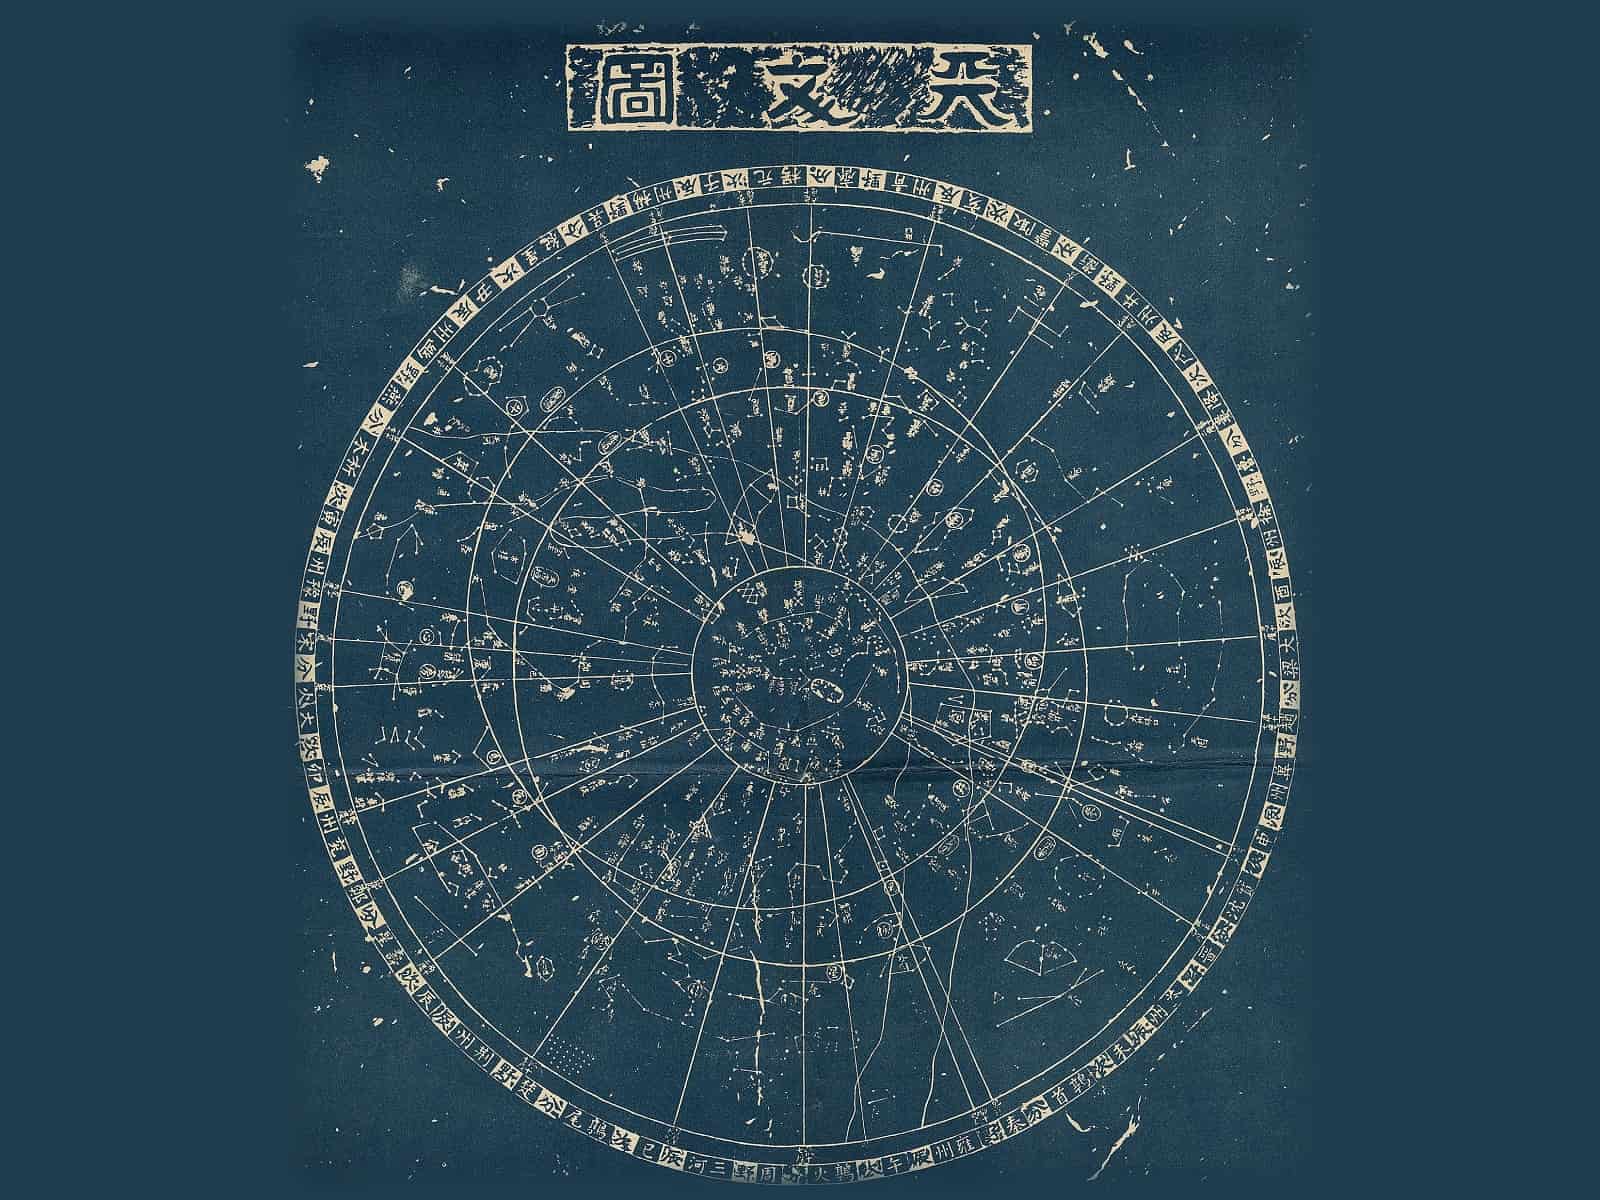 Chinesische Sternekarte aus dem 13. Jahrhundert